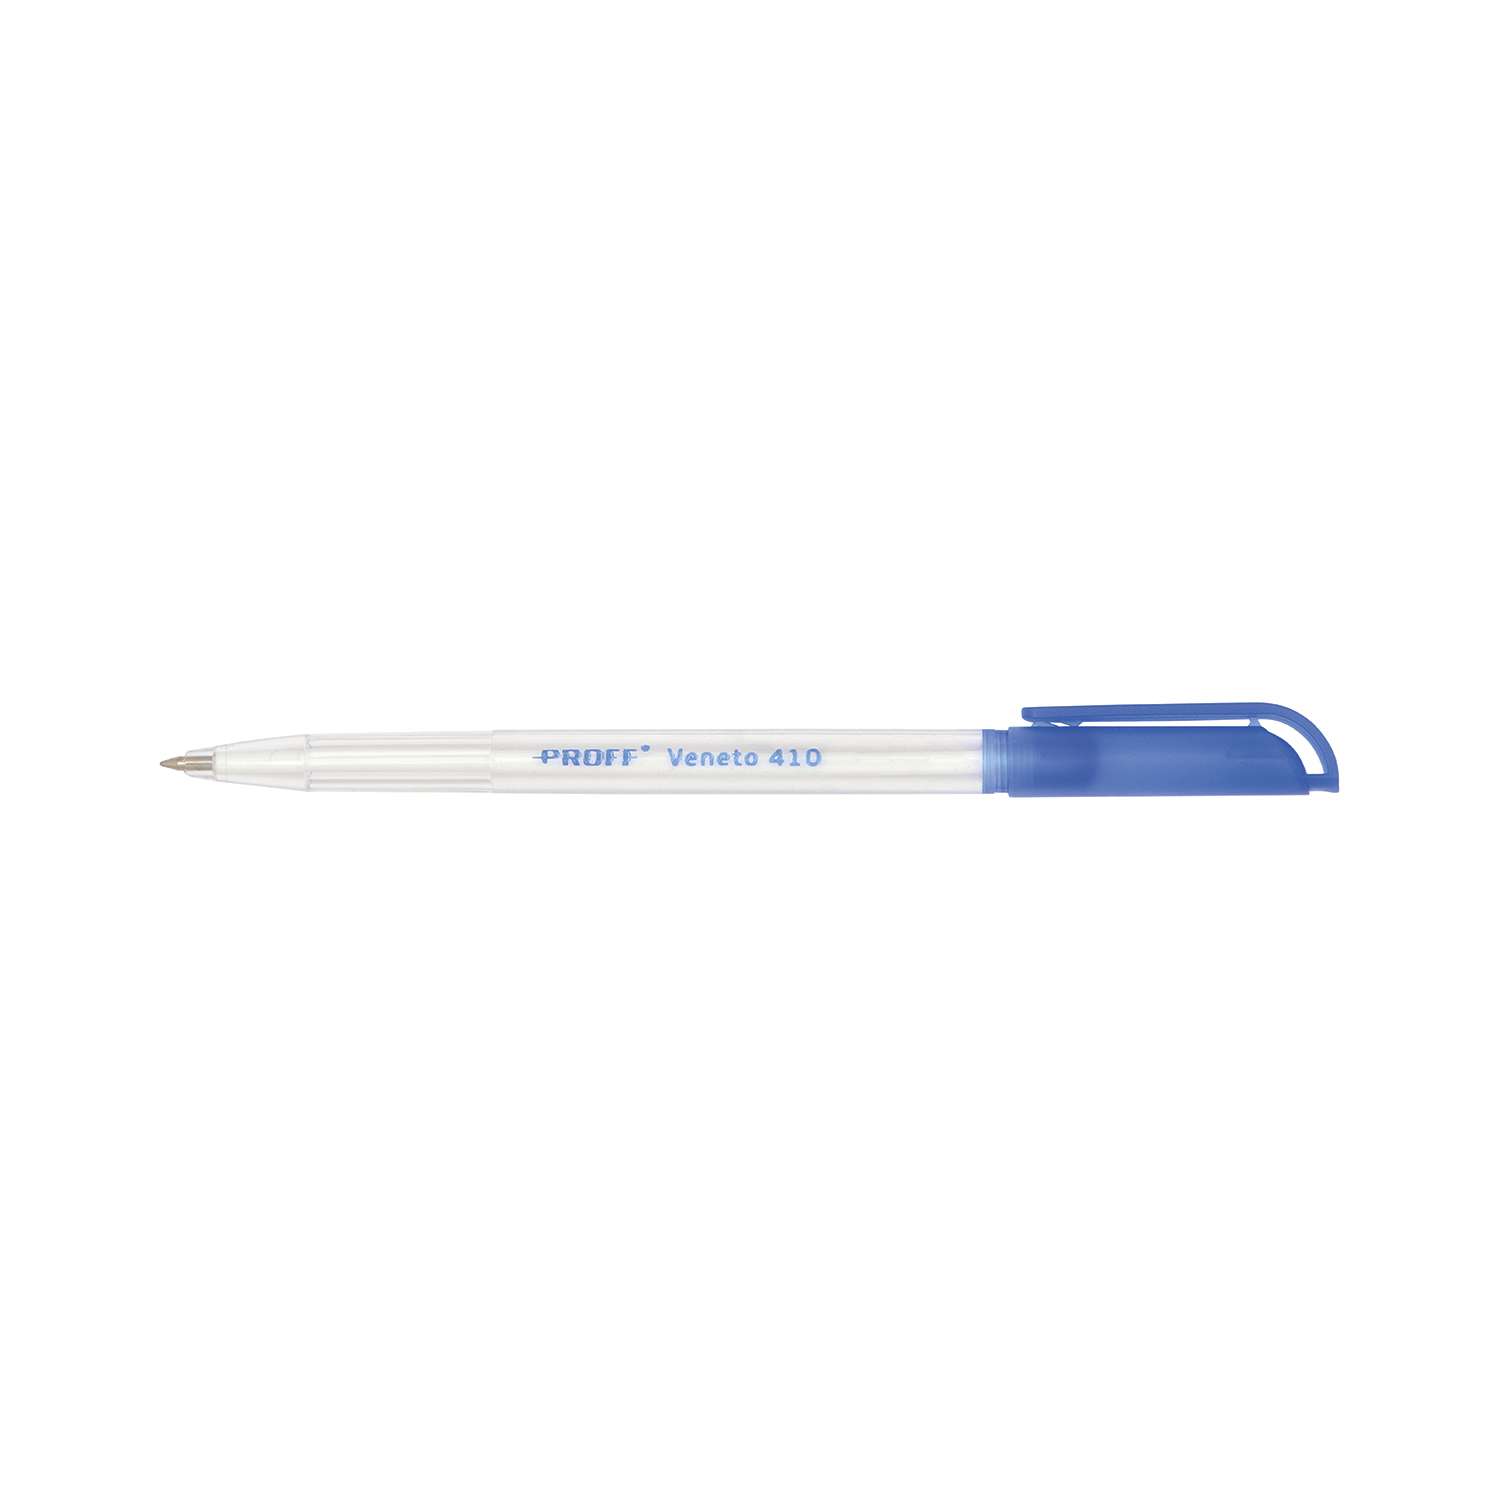 Ручка Proff шариковая синяя Proff. Veneto 410 (0.7 мм) с прозрачным корпусом - фото 2